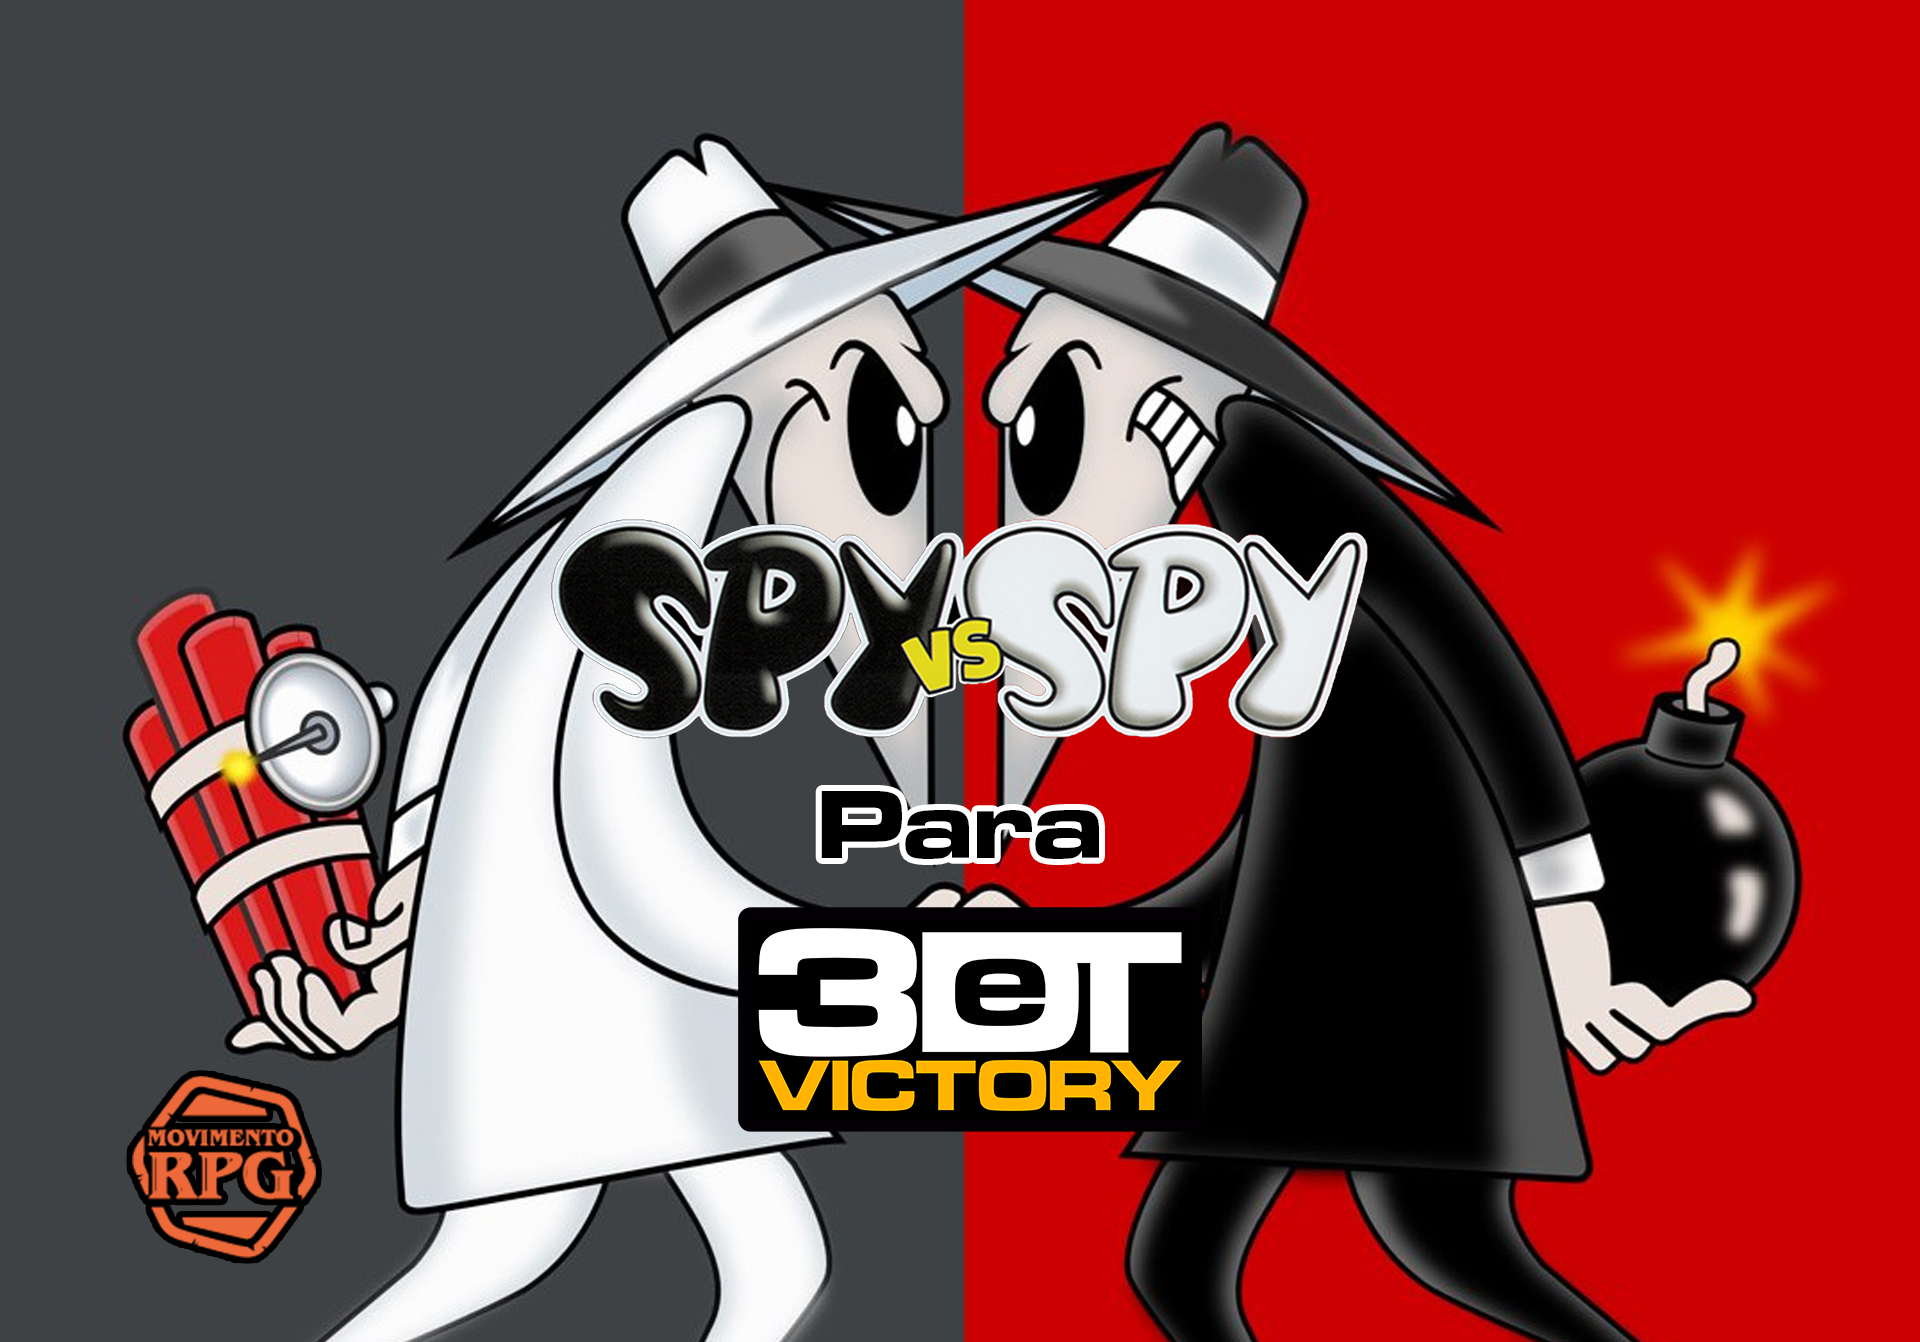 Spy vs. Spy para 3DeT Victory